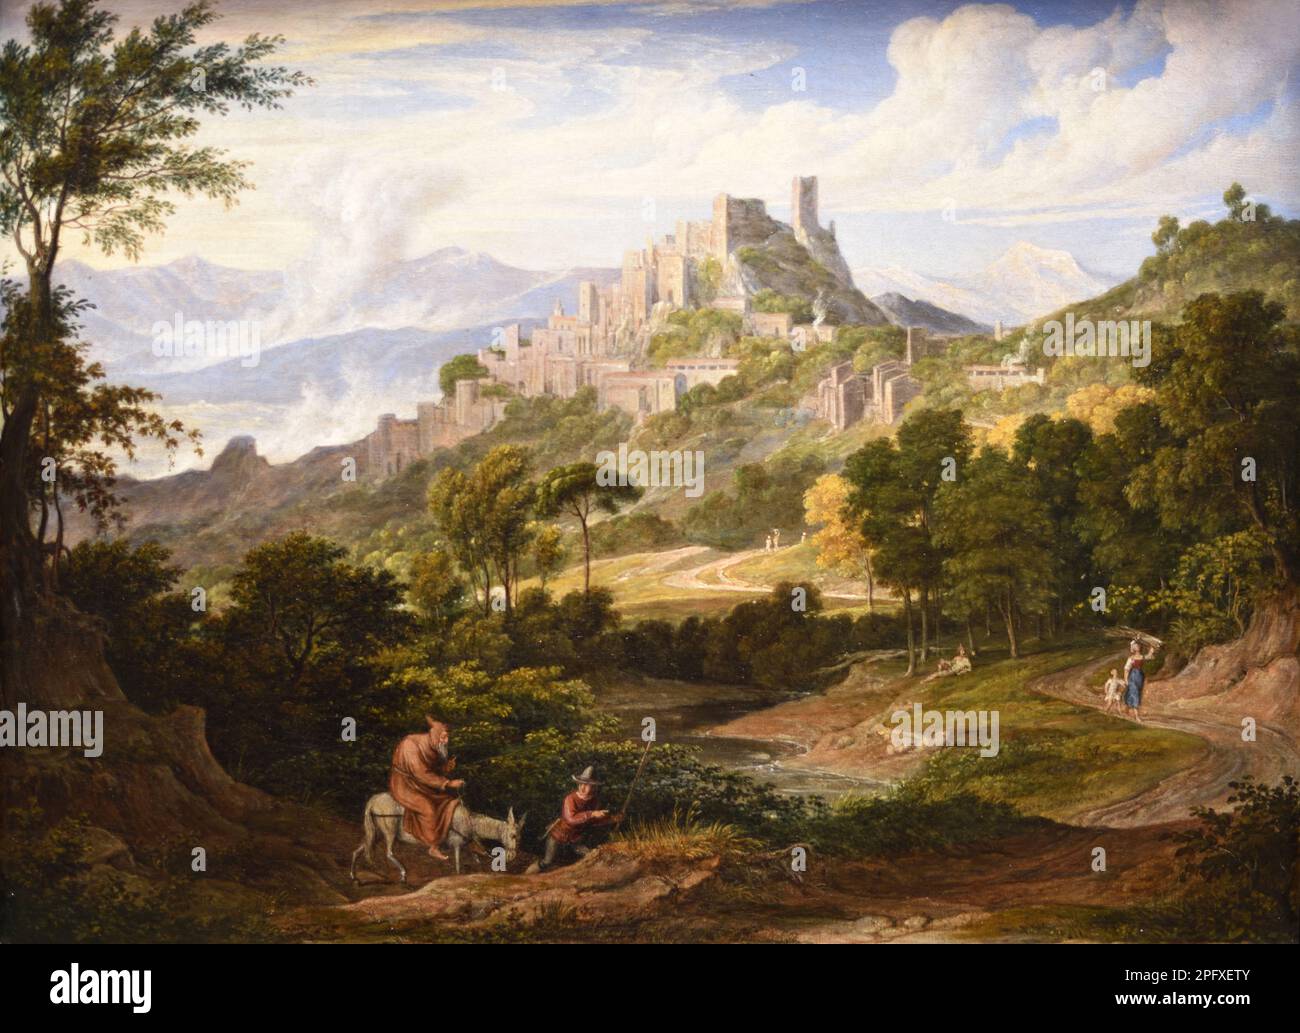 Landschaft in der Nähe von Olevano mit Mönch auf dem Pferderücken. Ölgemälde von Joseph Anton Koch c1830. Olevano Romano Rome Latium Italien Stockfoto